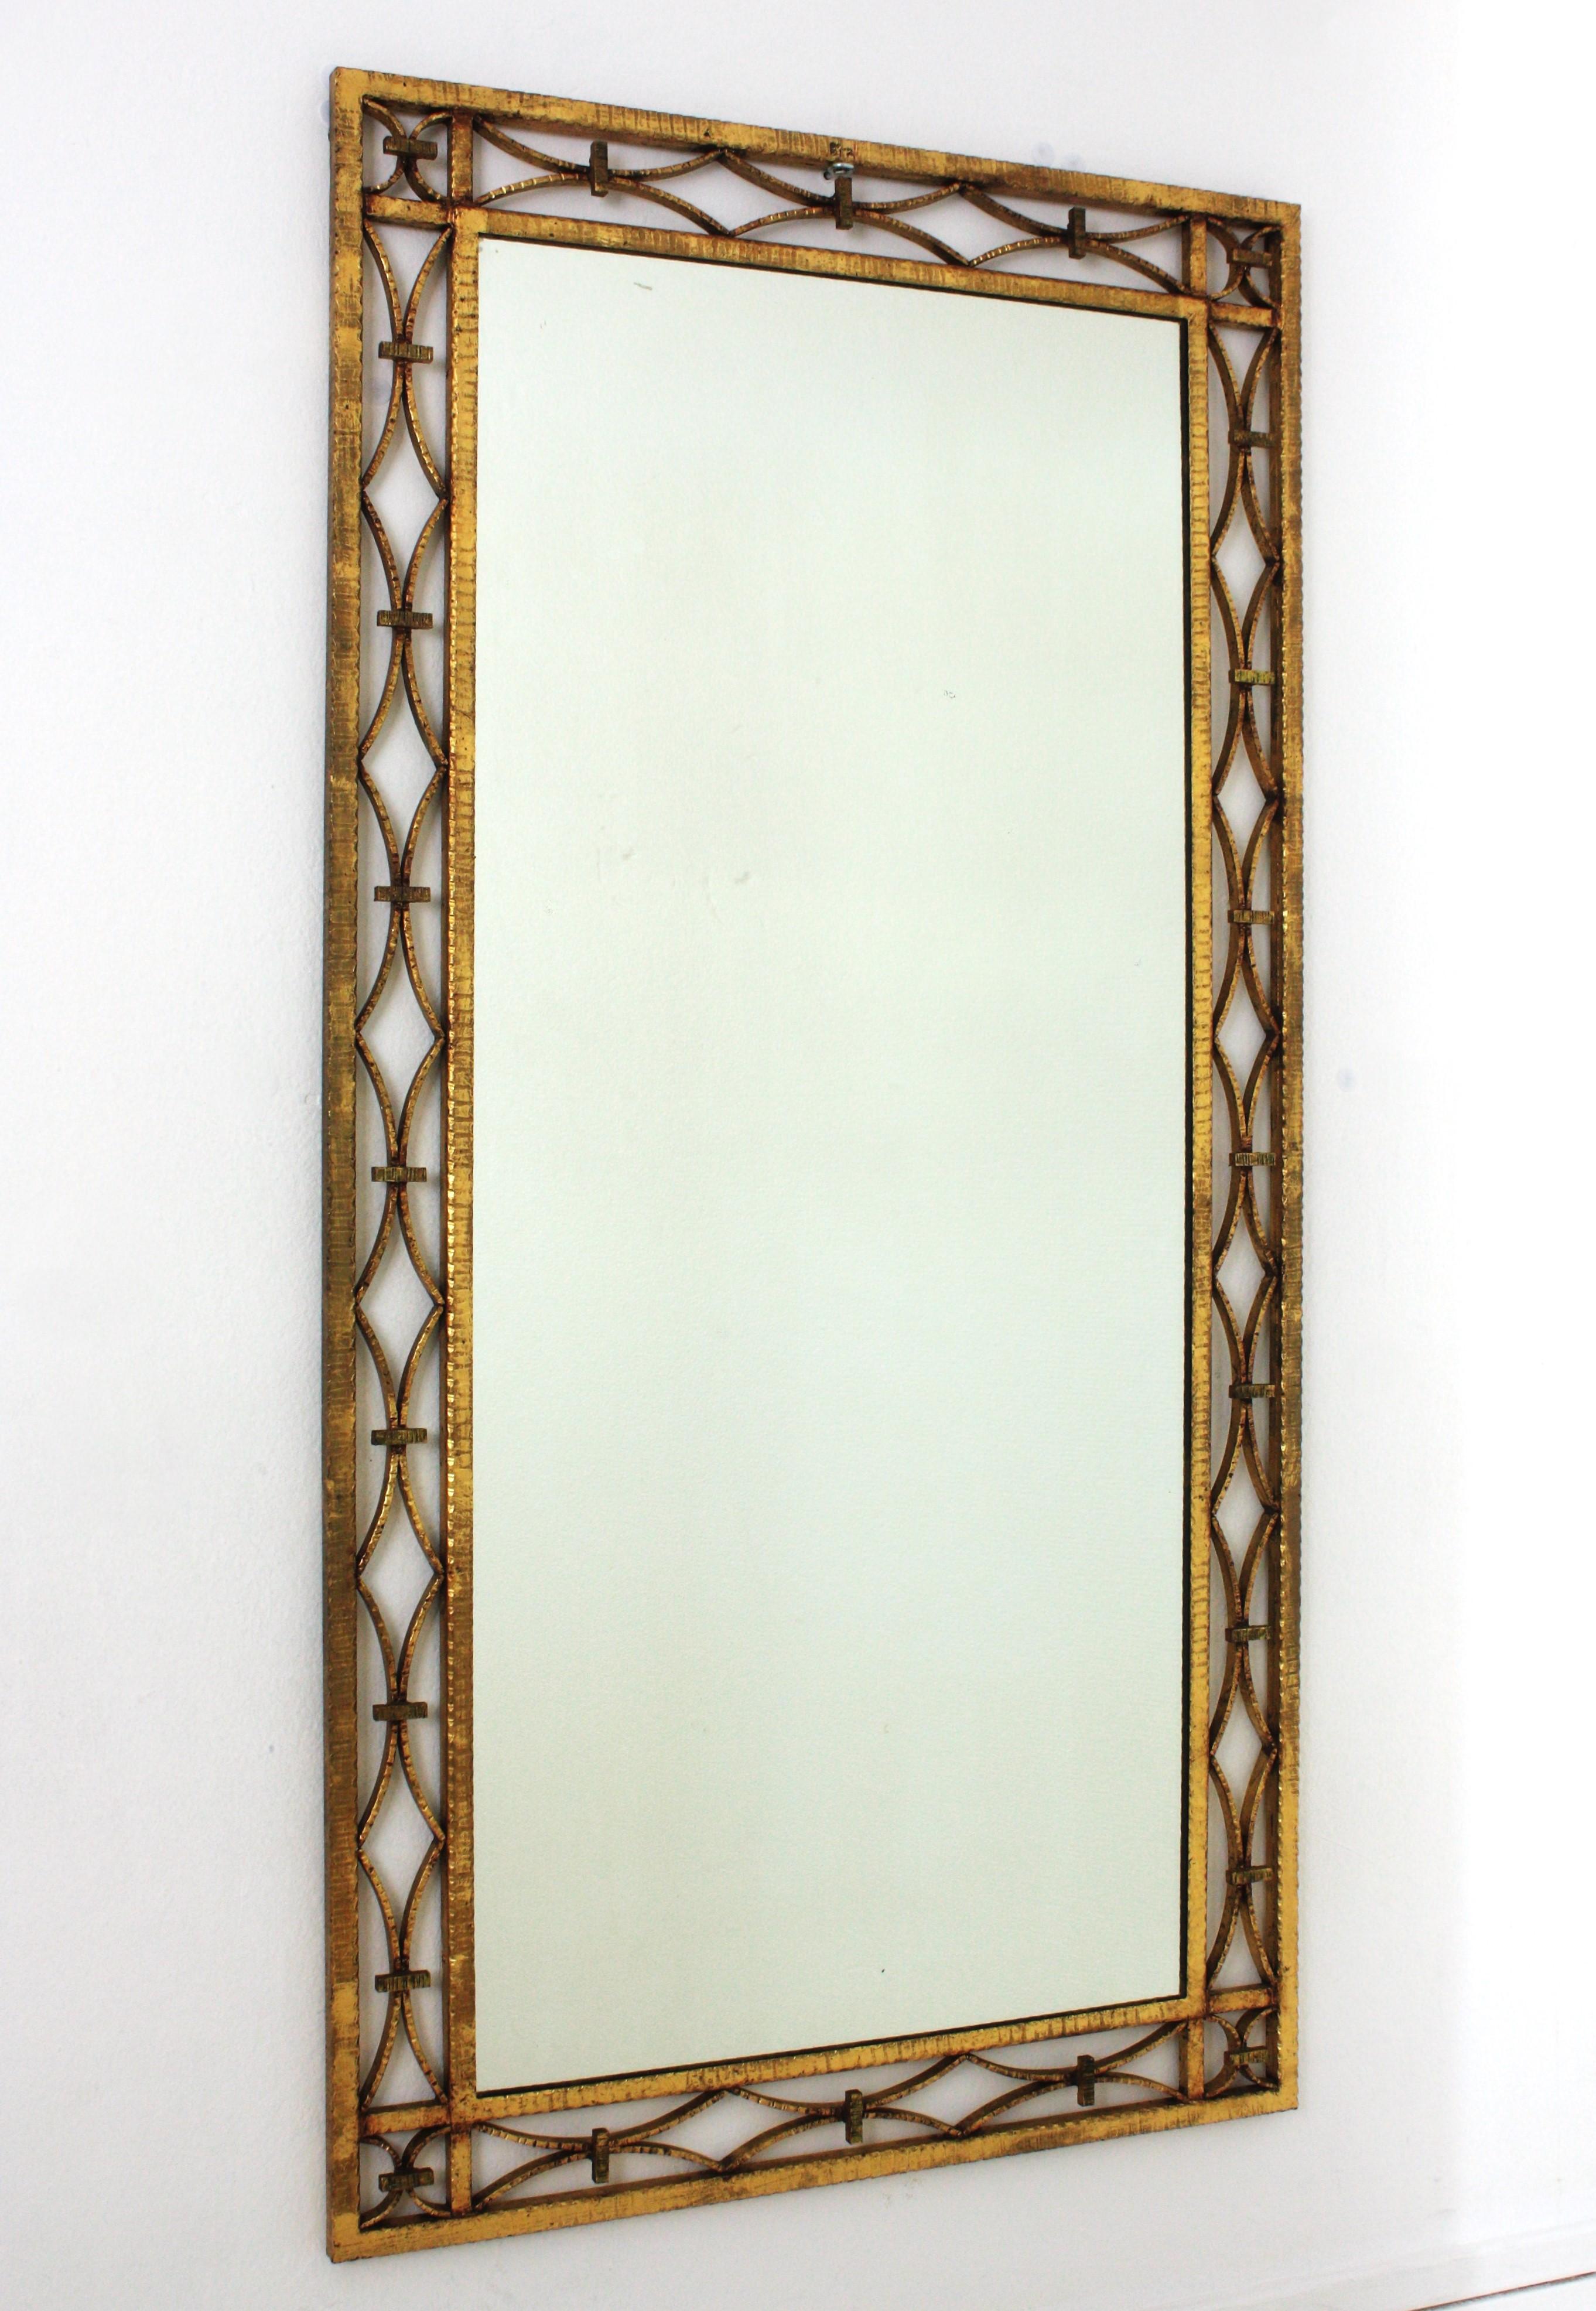 Miroir rectangulaire doré, fer forgé, feuille d'or
Miroir en fer forgé Art déco avec des motifs géométriques complexes, France, années 1940.
Miroir attrayant en fer forgé à la main avec des décorations géométriques sur le cadre et un superbe design